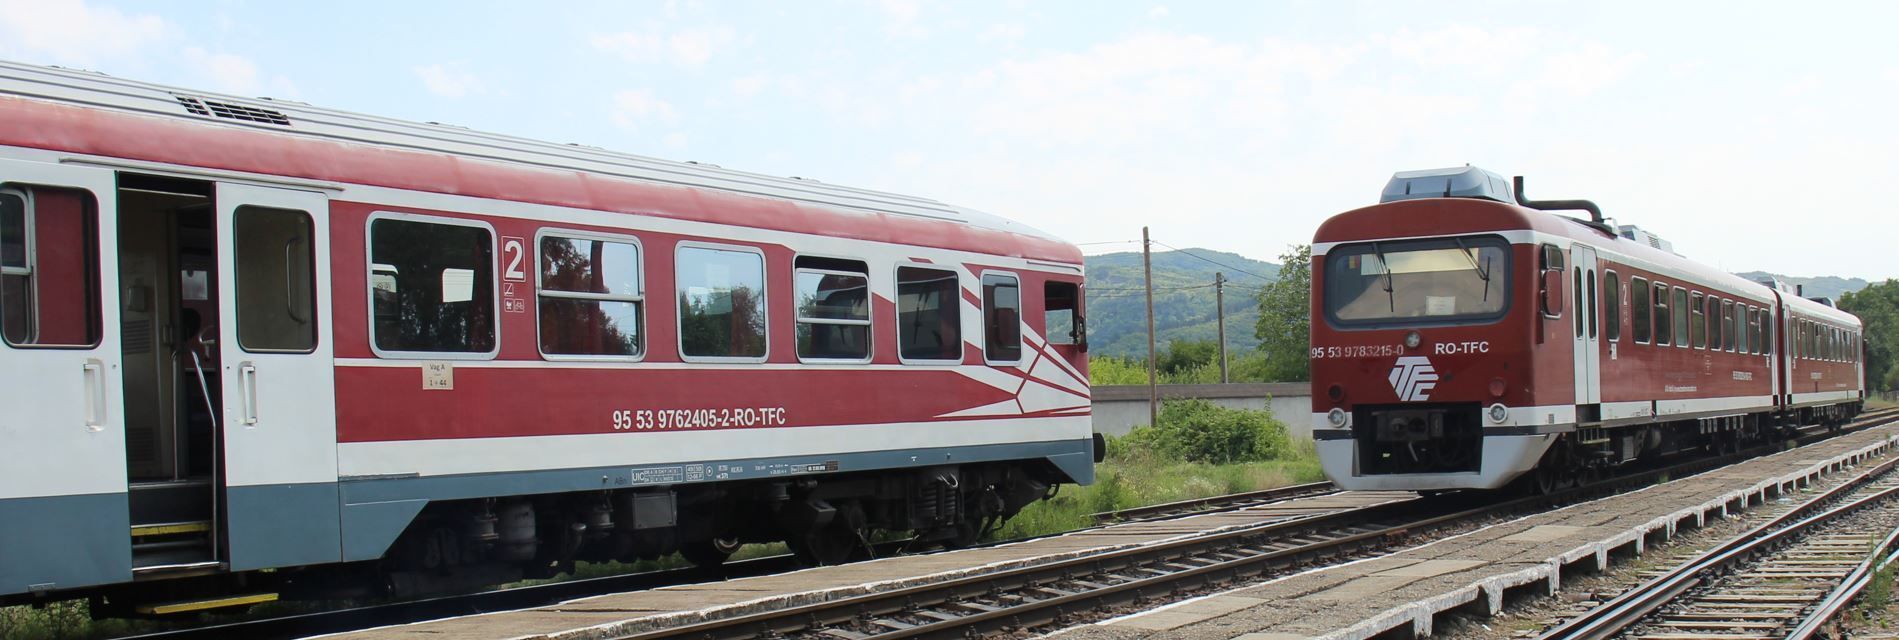 Triebwagenzüge 95 53 9783215-0 RO-TFC und 95 53 9762405-2-RO-TFC im Bahnhof Patirlagele - 9. August 2022